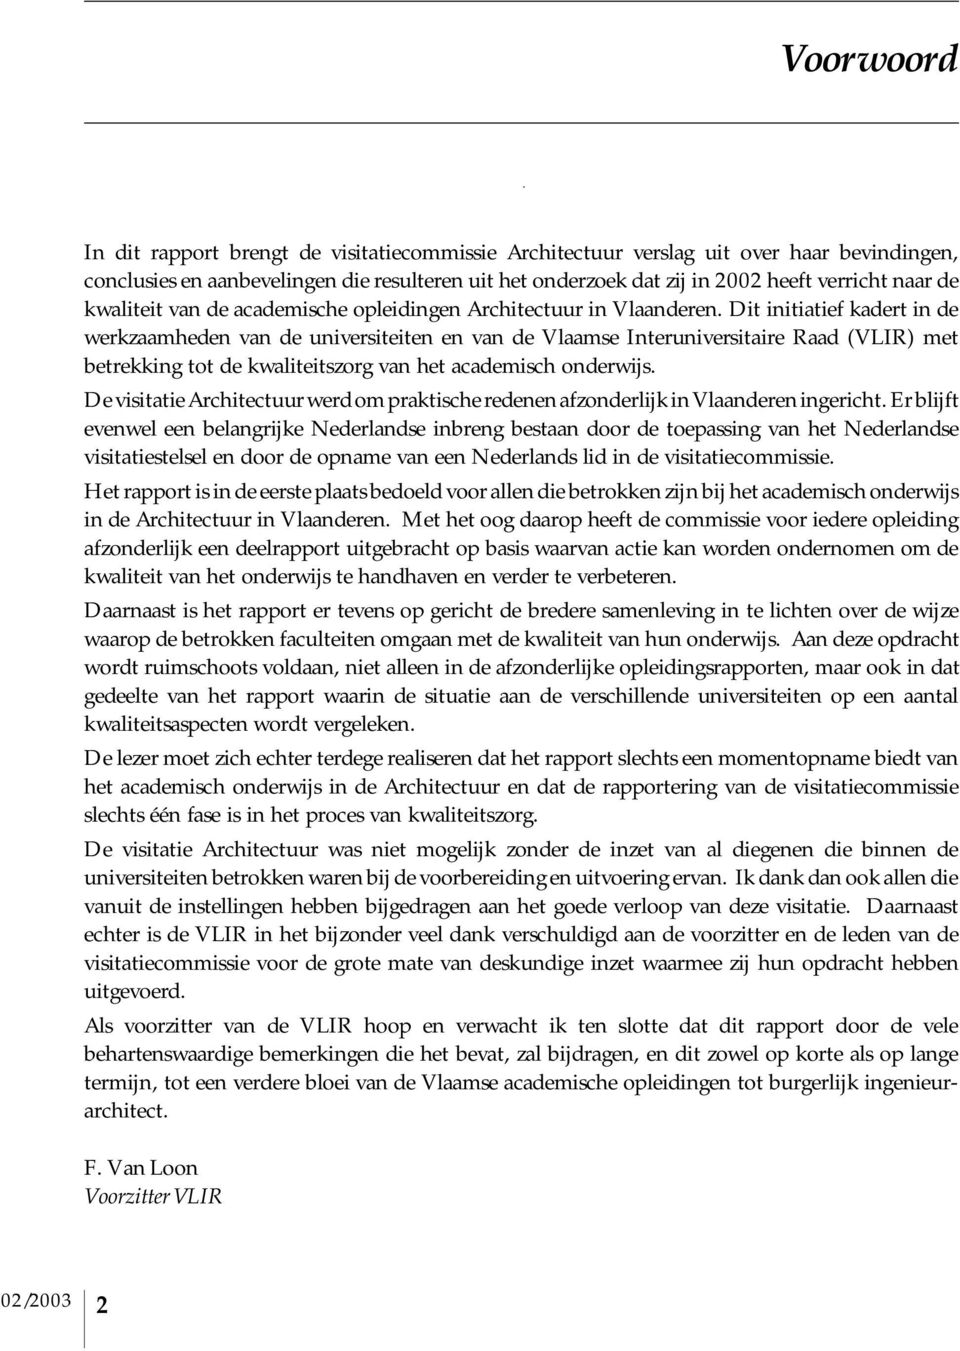 Dit initiatief kadert in de werkzaamheden van de universiteiten en van de Vlaamse Interuniversitaire Raad (VLIR) met betrekking tot de kwaliteitszorg van het academisch onderwijs.